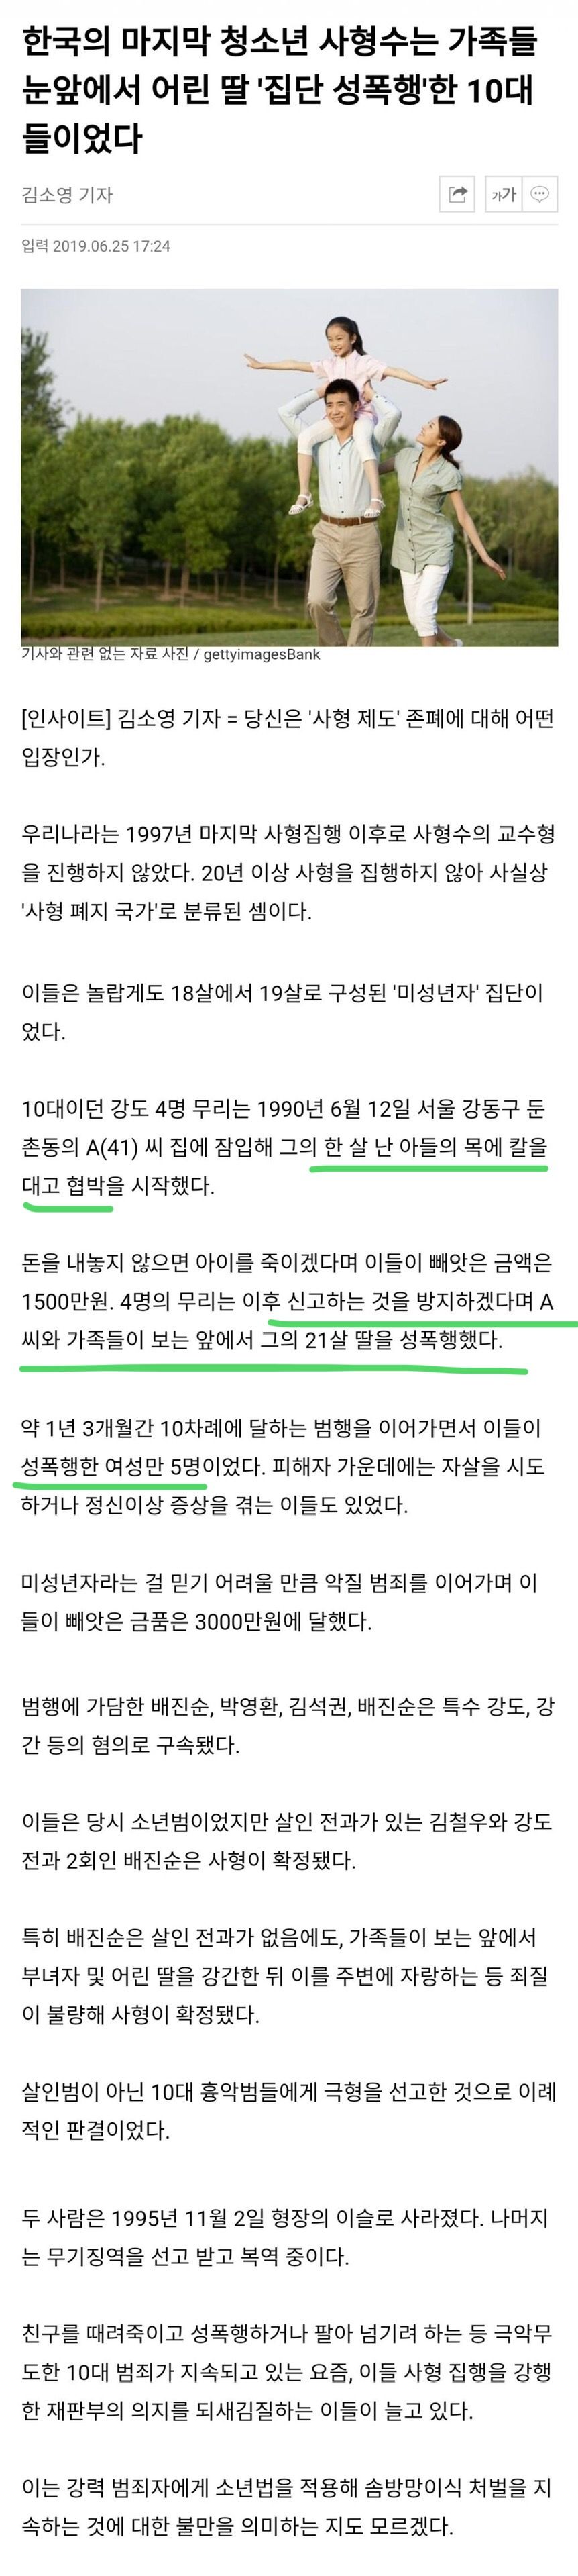 한국의 마지막 청소년 사형수...jpg